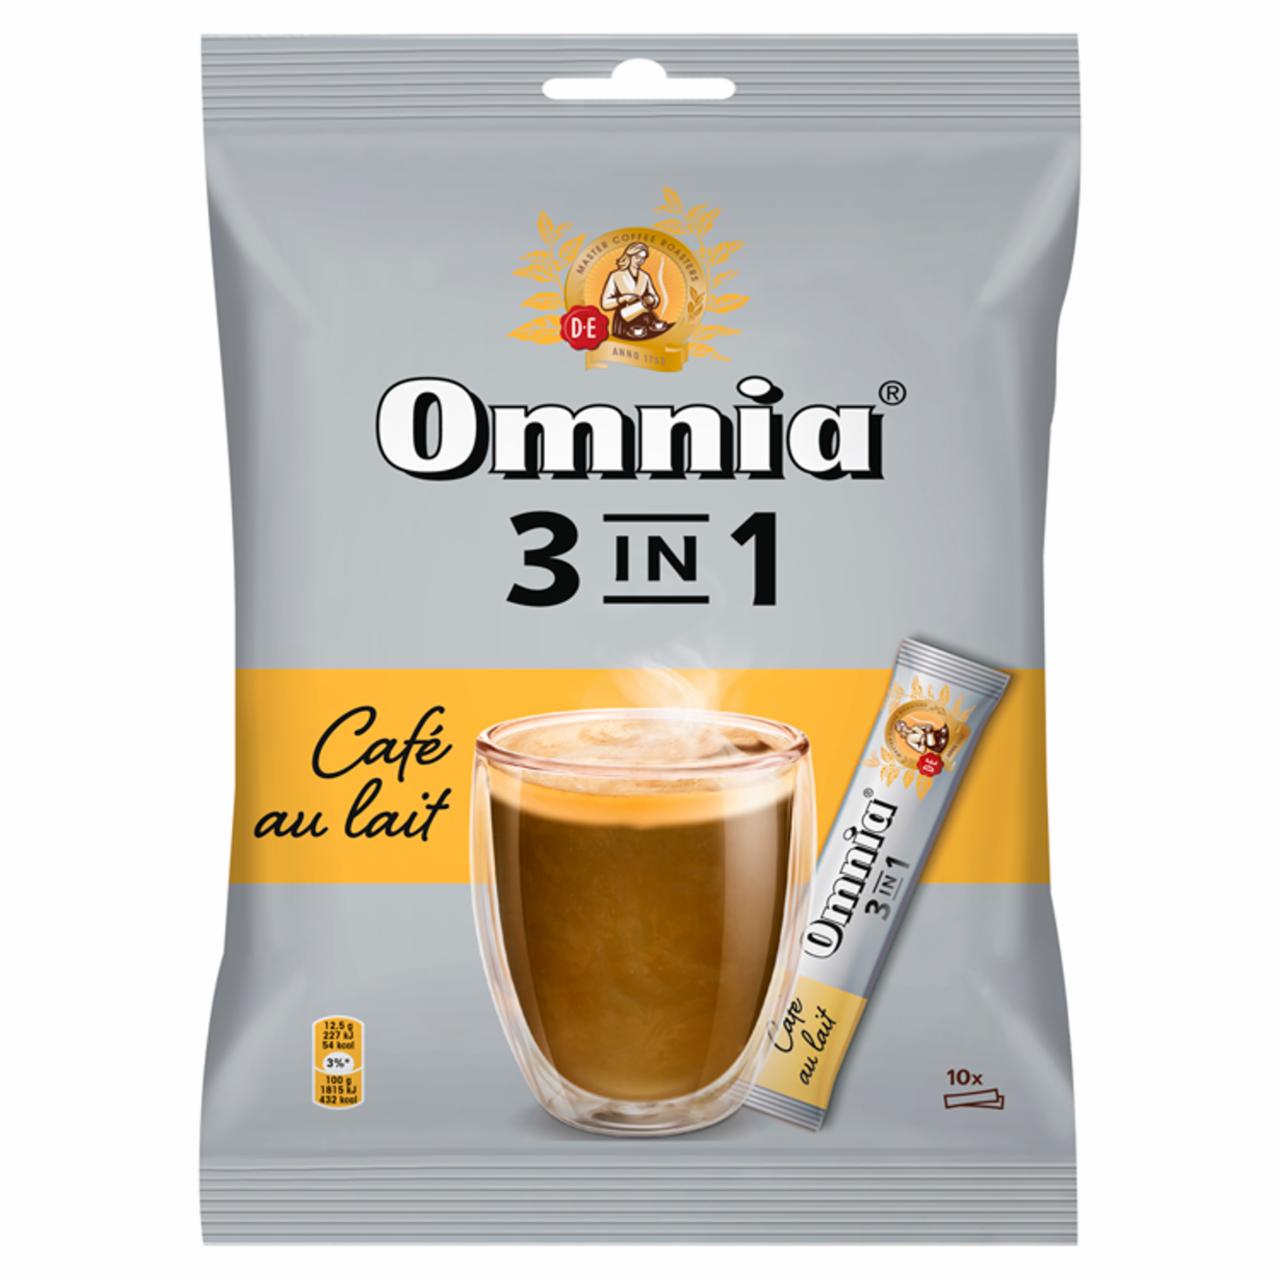 Képek - Omnia 3 in 1 azonnal oldódó kávéitalpor cukorral és sovány tejporral 10 x 12,5 g (125 g)